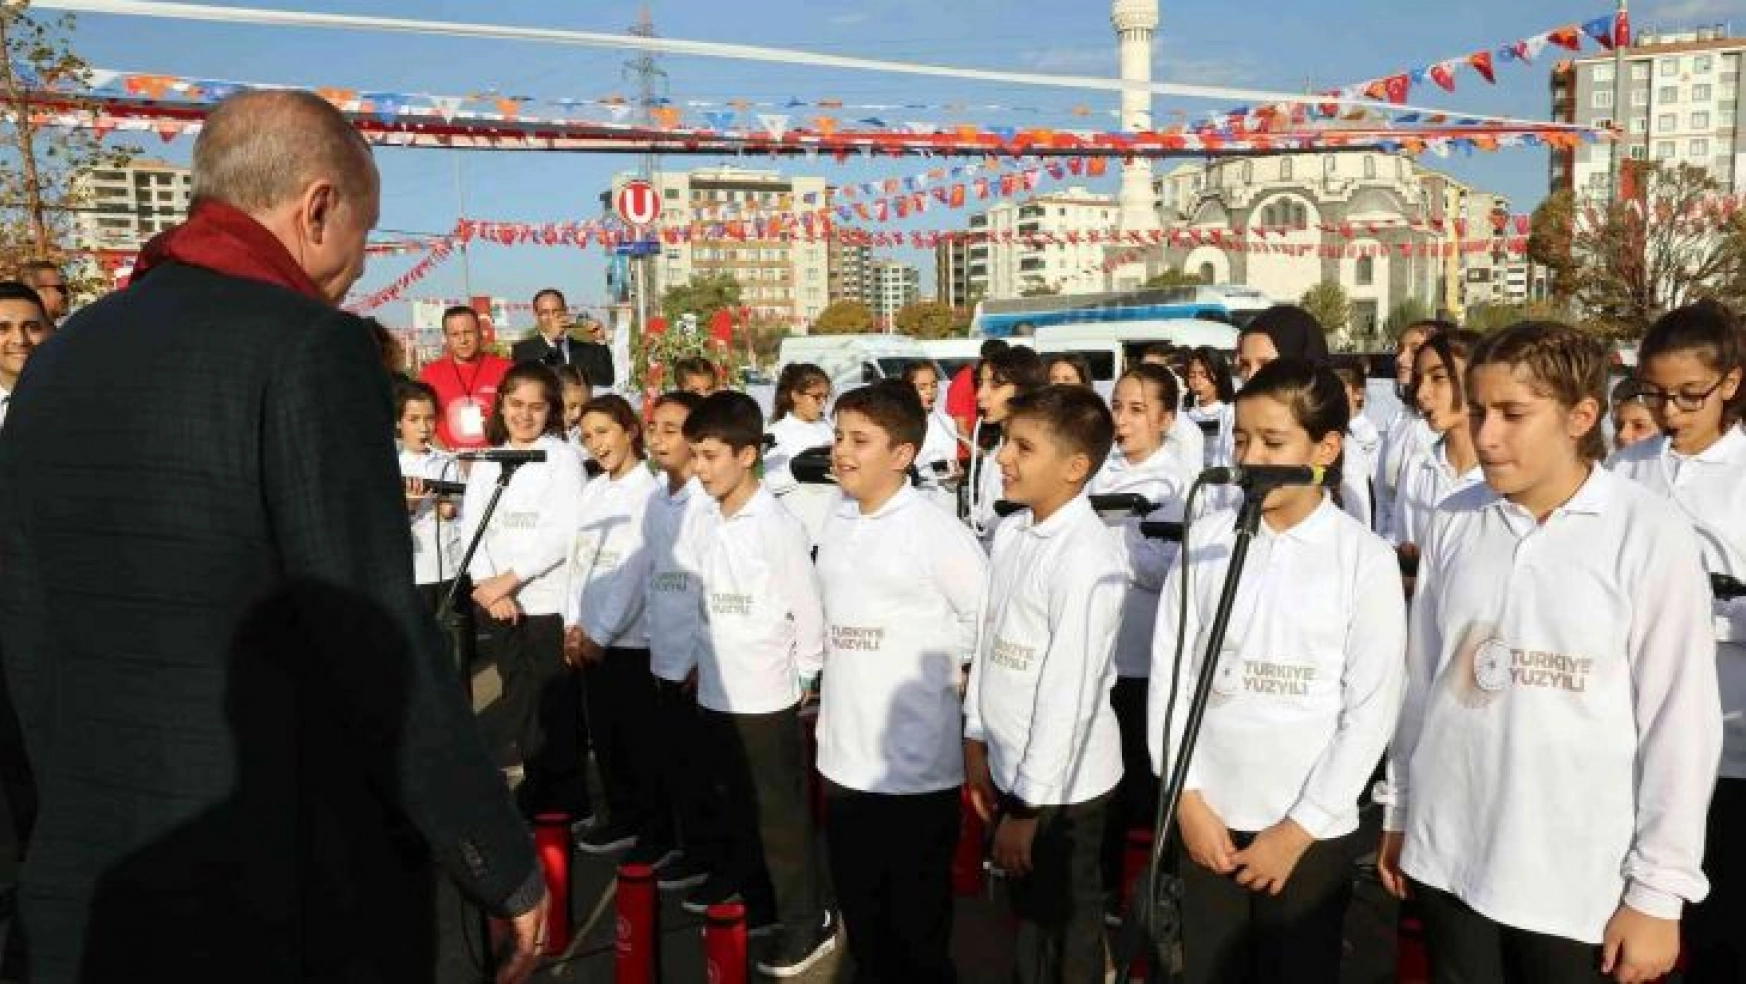 Gaziantep'te Erdoğan'a 'Başlasın Türkiye Yüzyılı' sürprizi